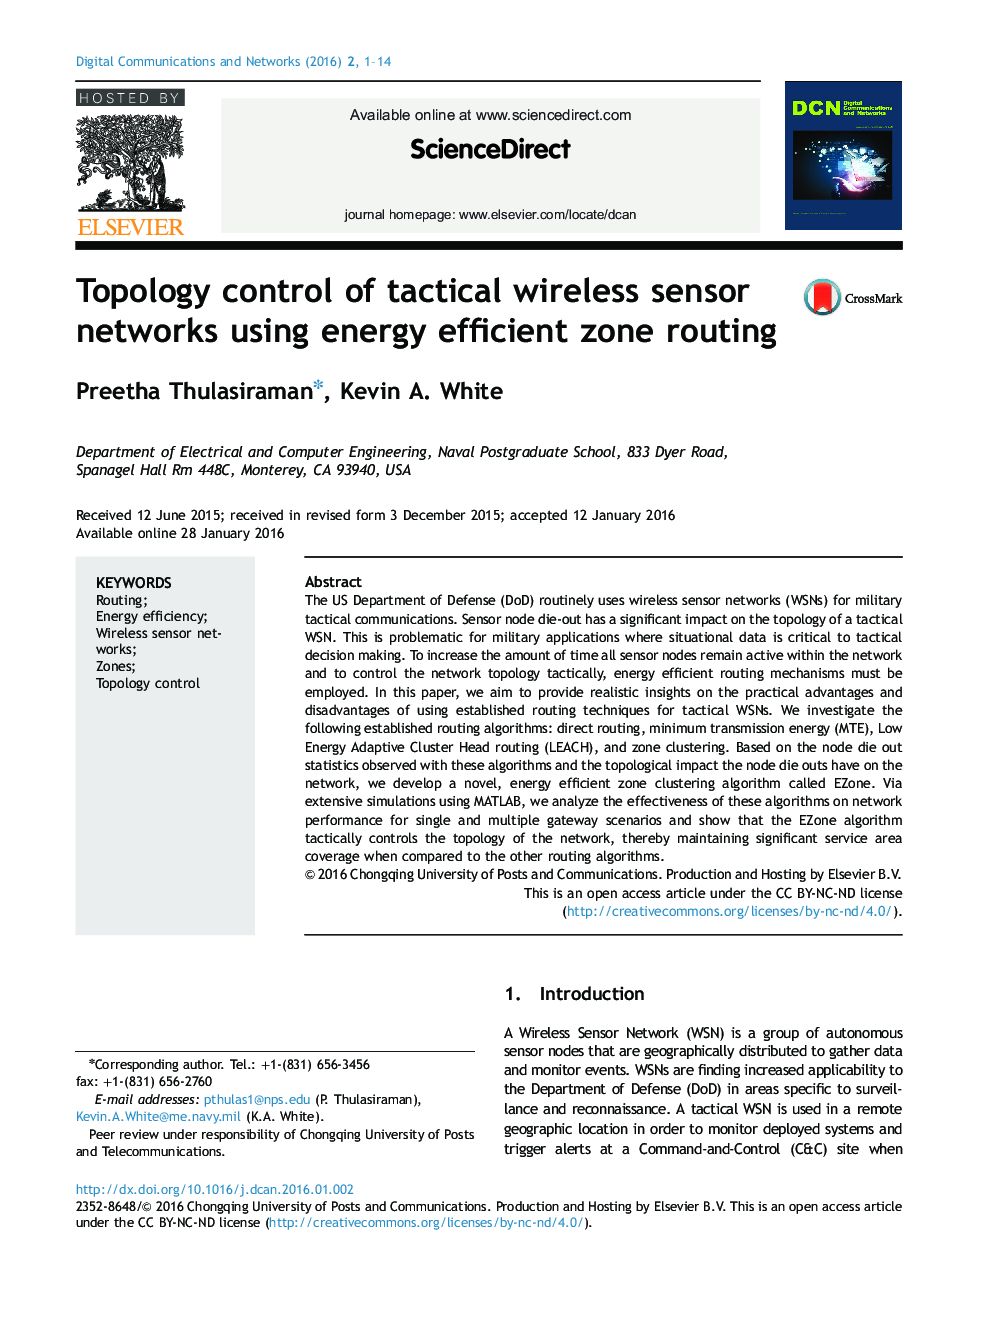 کنترل توپولوژی شبکه های حسگر تاکتیکی با استفاده از مسیریابی منطقه ای با کارایی انرژی 